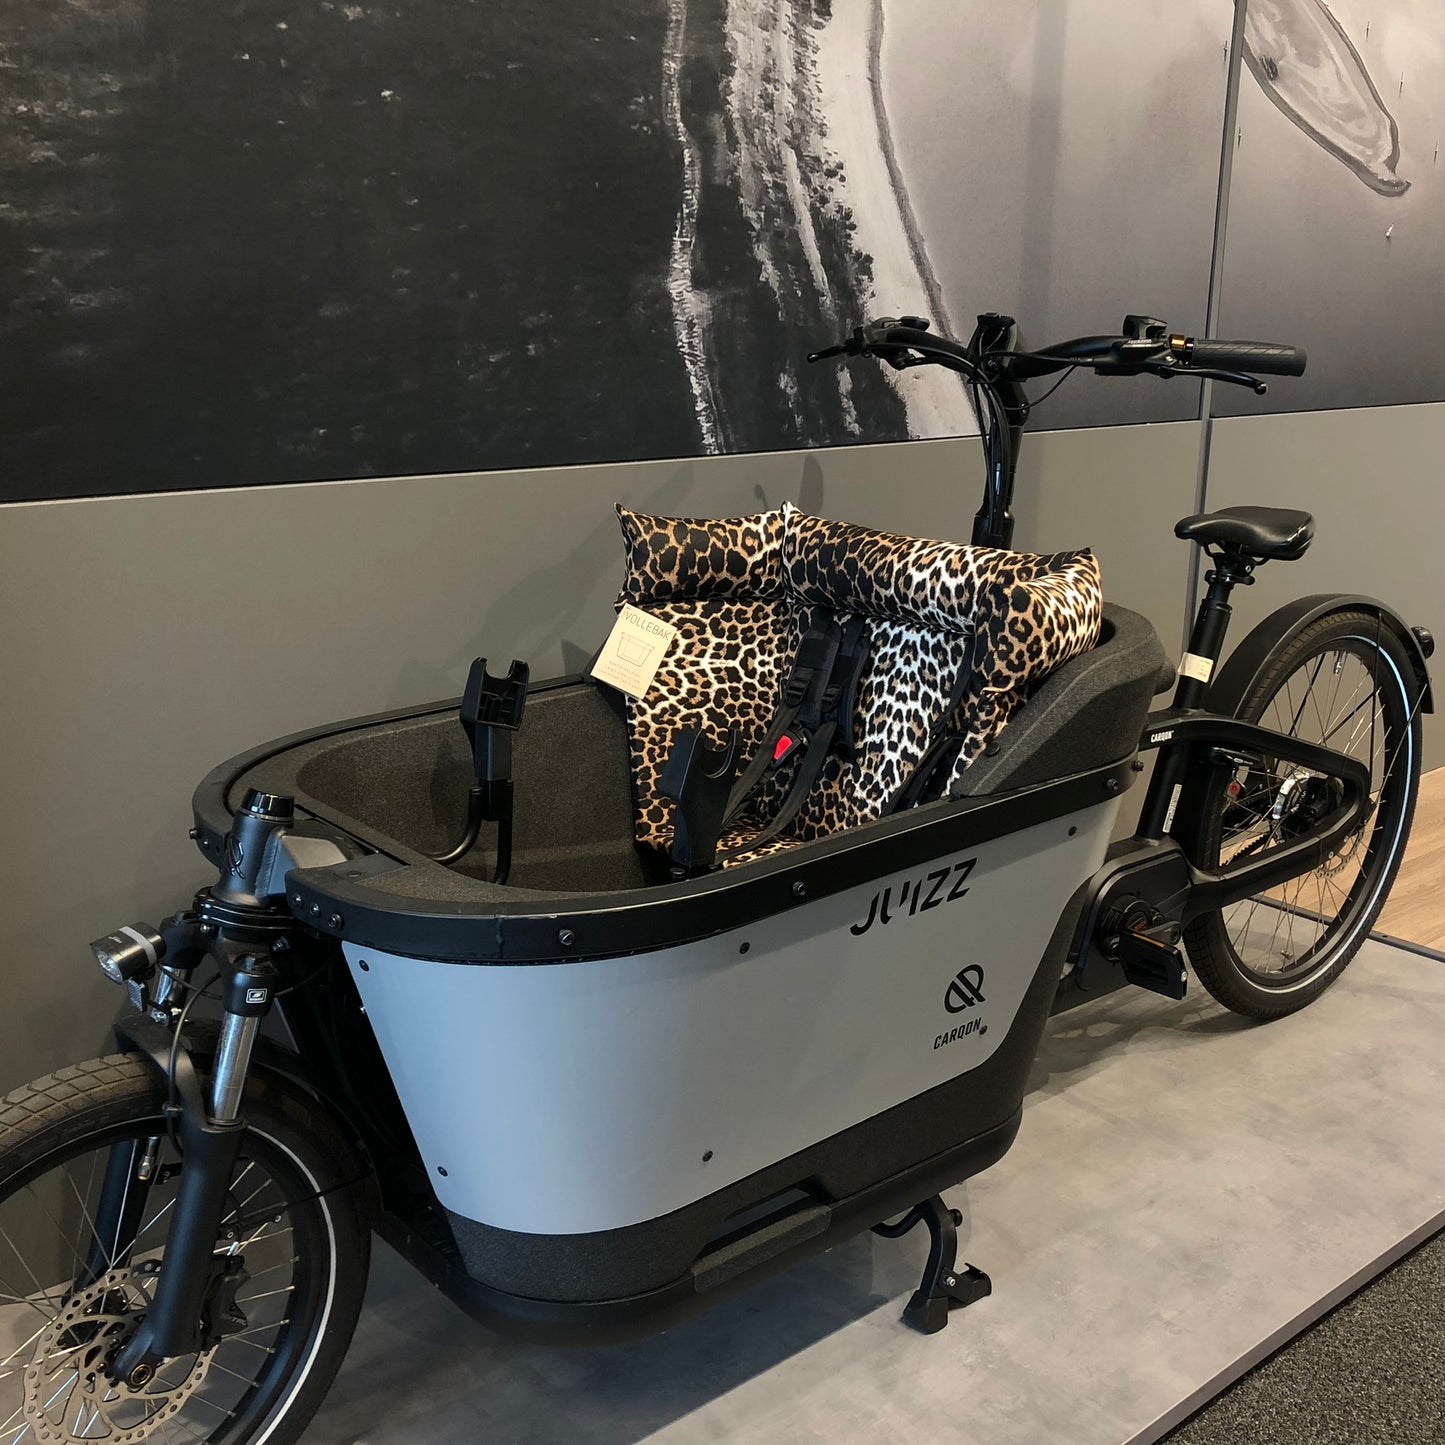 Cargo bike cushion Carqon - Leopard